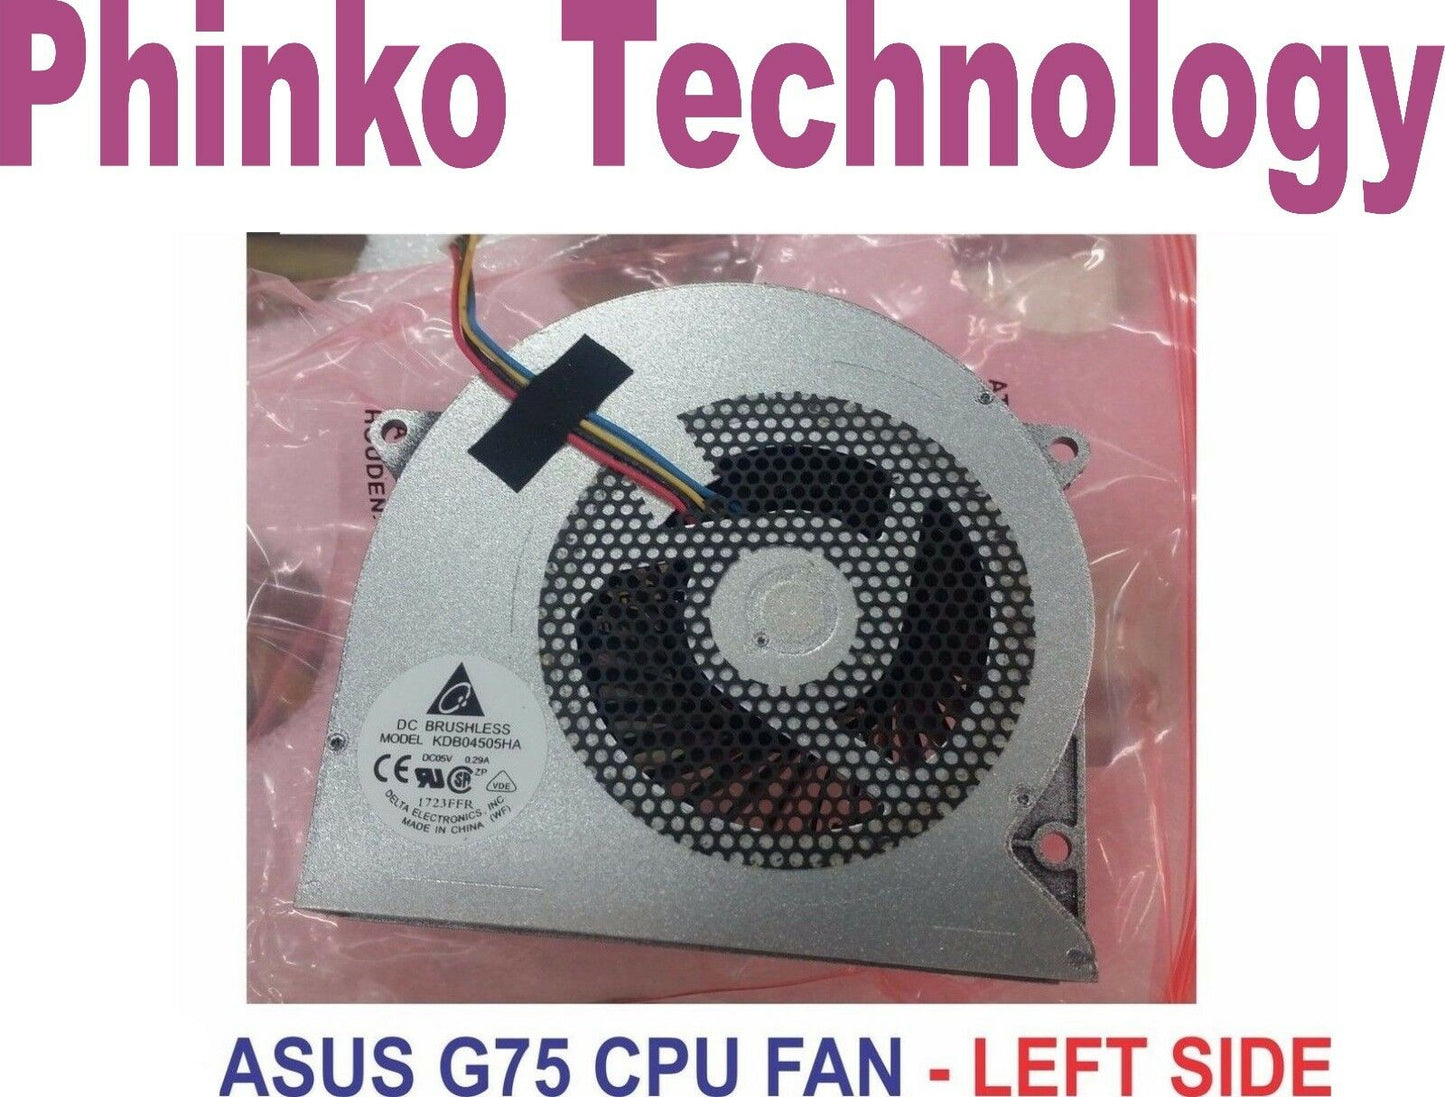 ASUS G55 G75 G75V G75VW G75VX Cpu Cooling Fan - LEFT SIDE 80mmx14mmx75mm